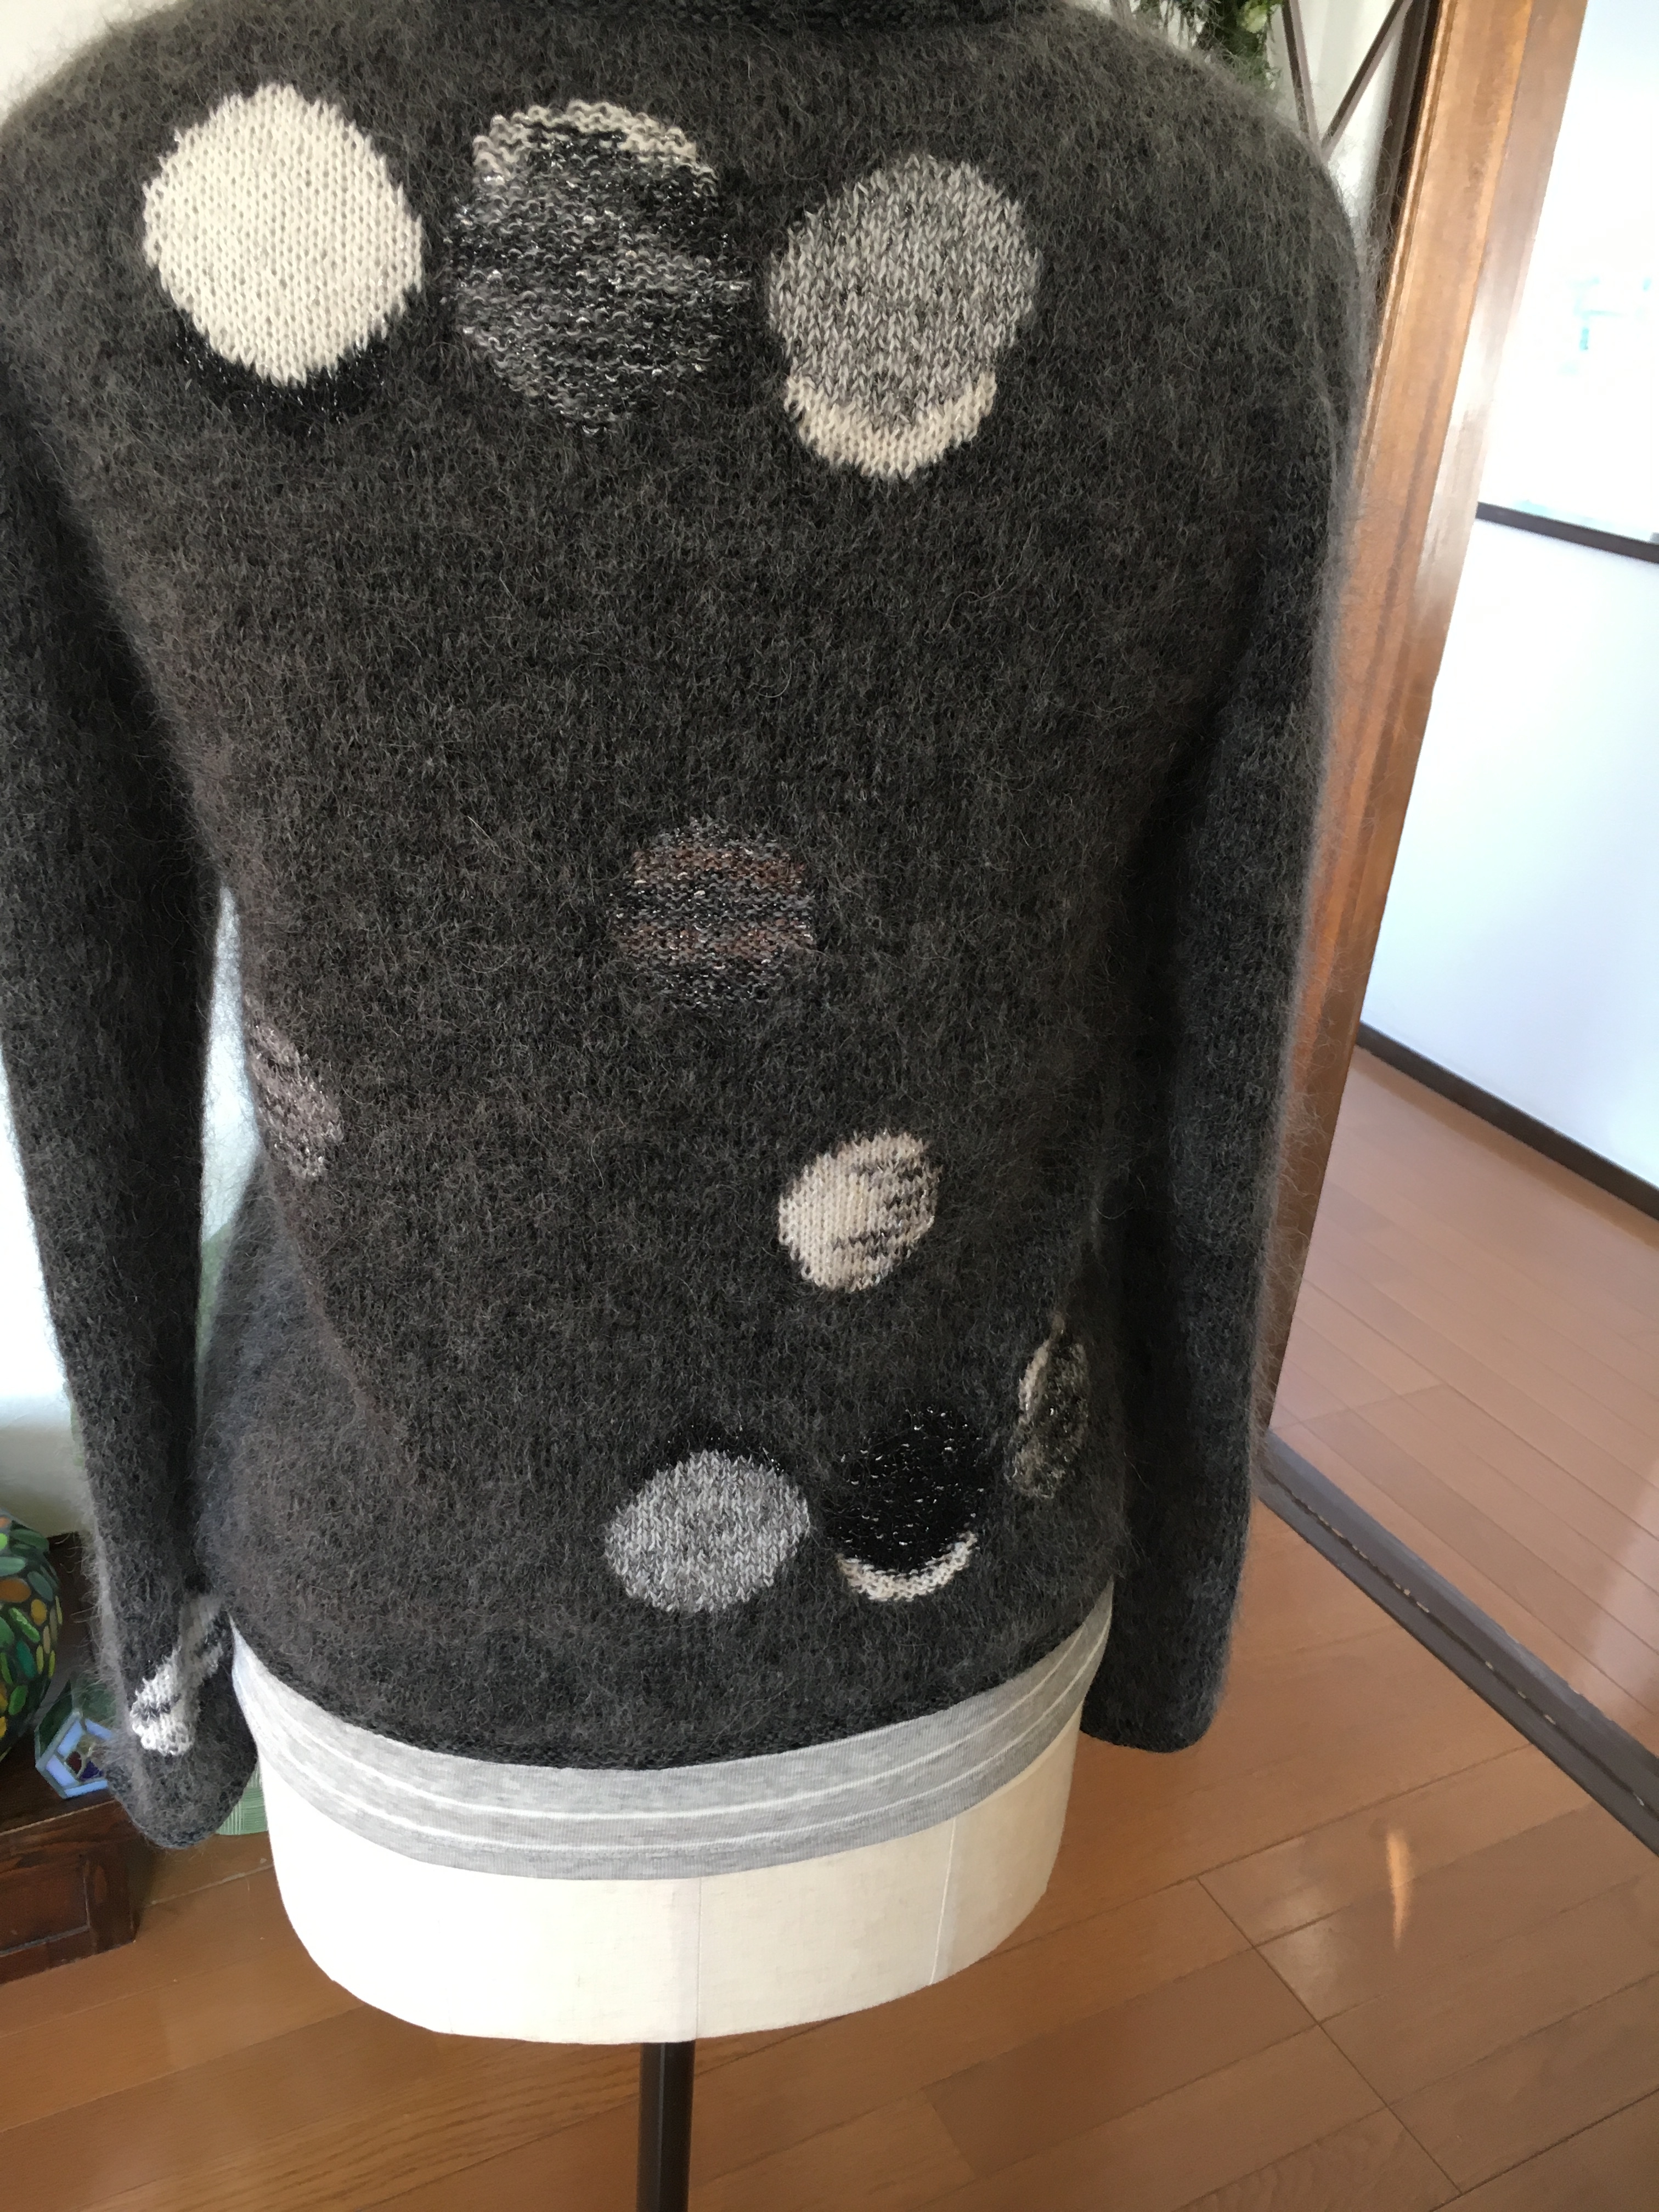 水玉模様のセーター ドット模様の方がカッコイイかな Iichi ハンドメイド クラフト作品 手仕事品の通販